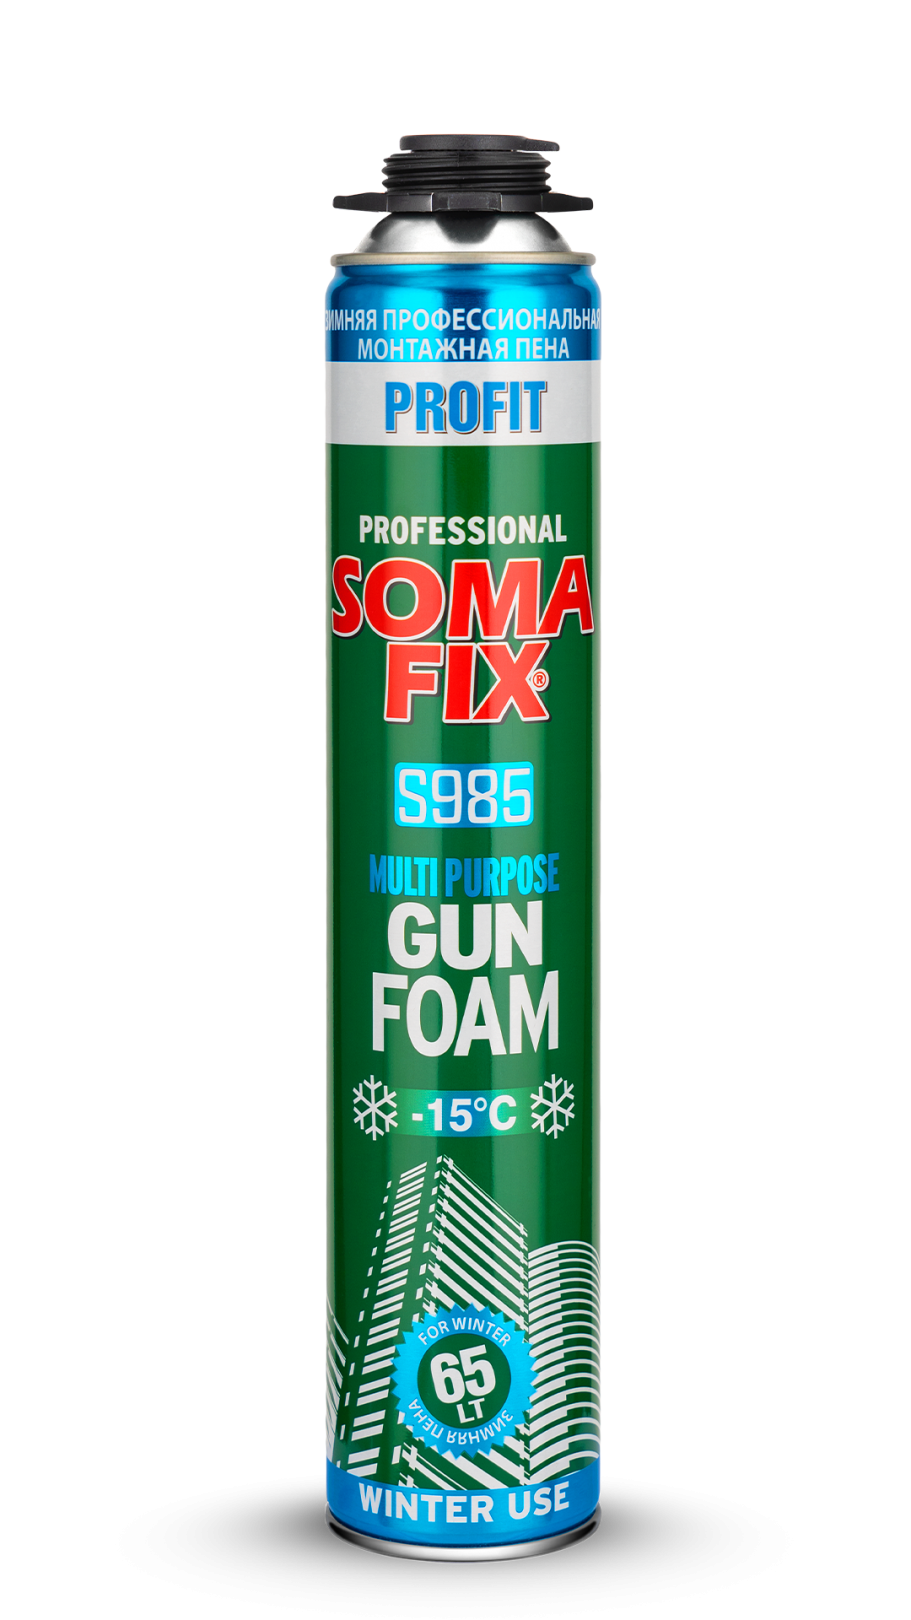 Somafix Profit Tabancalı Kışlık Poliüretan Köpük S985